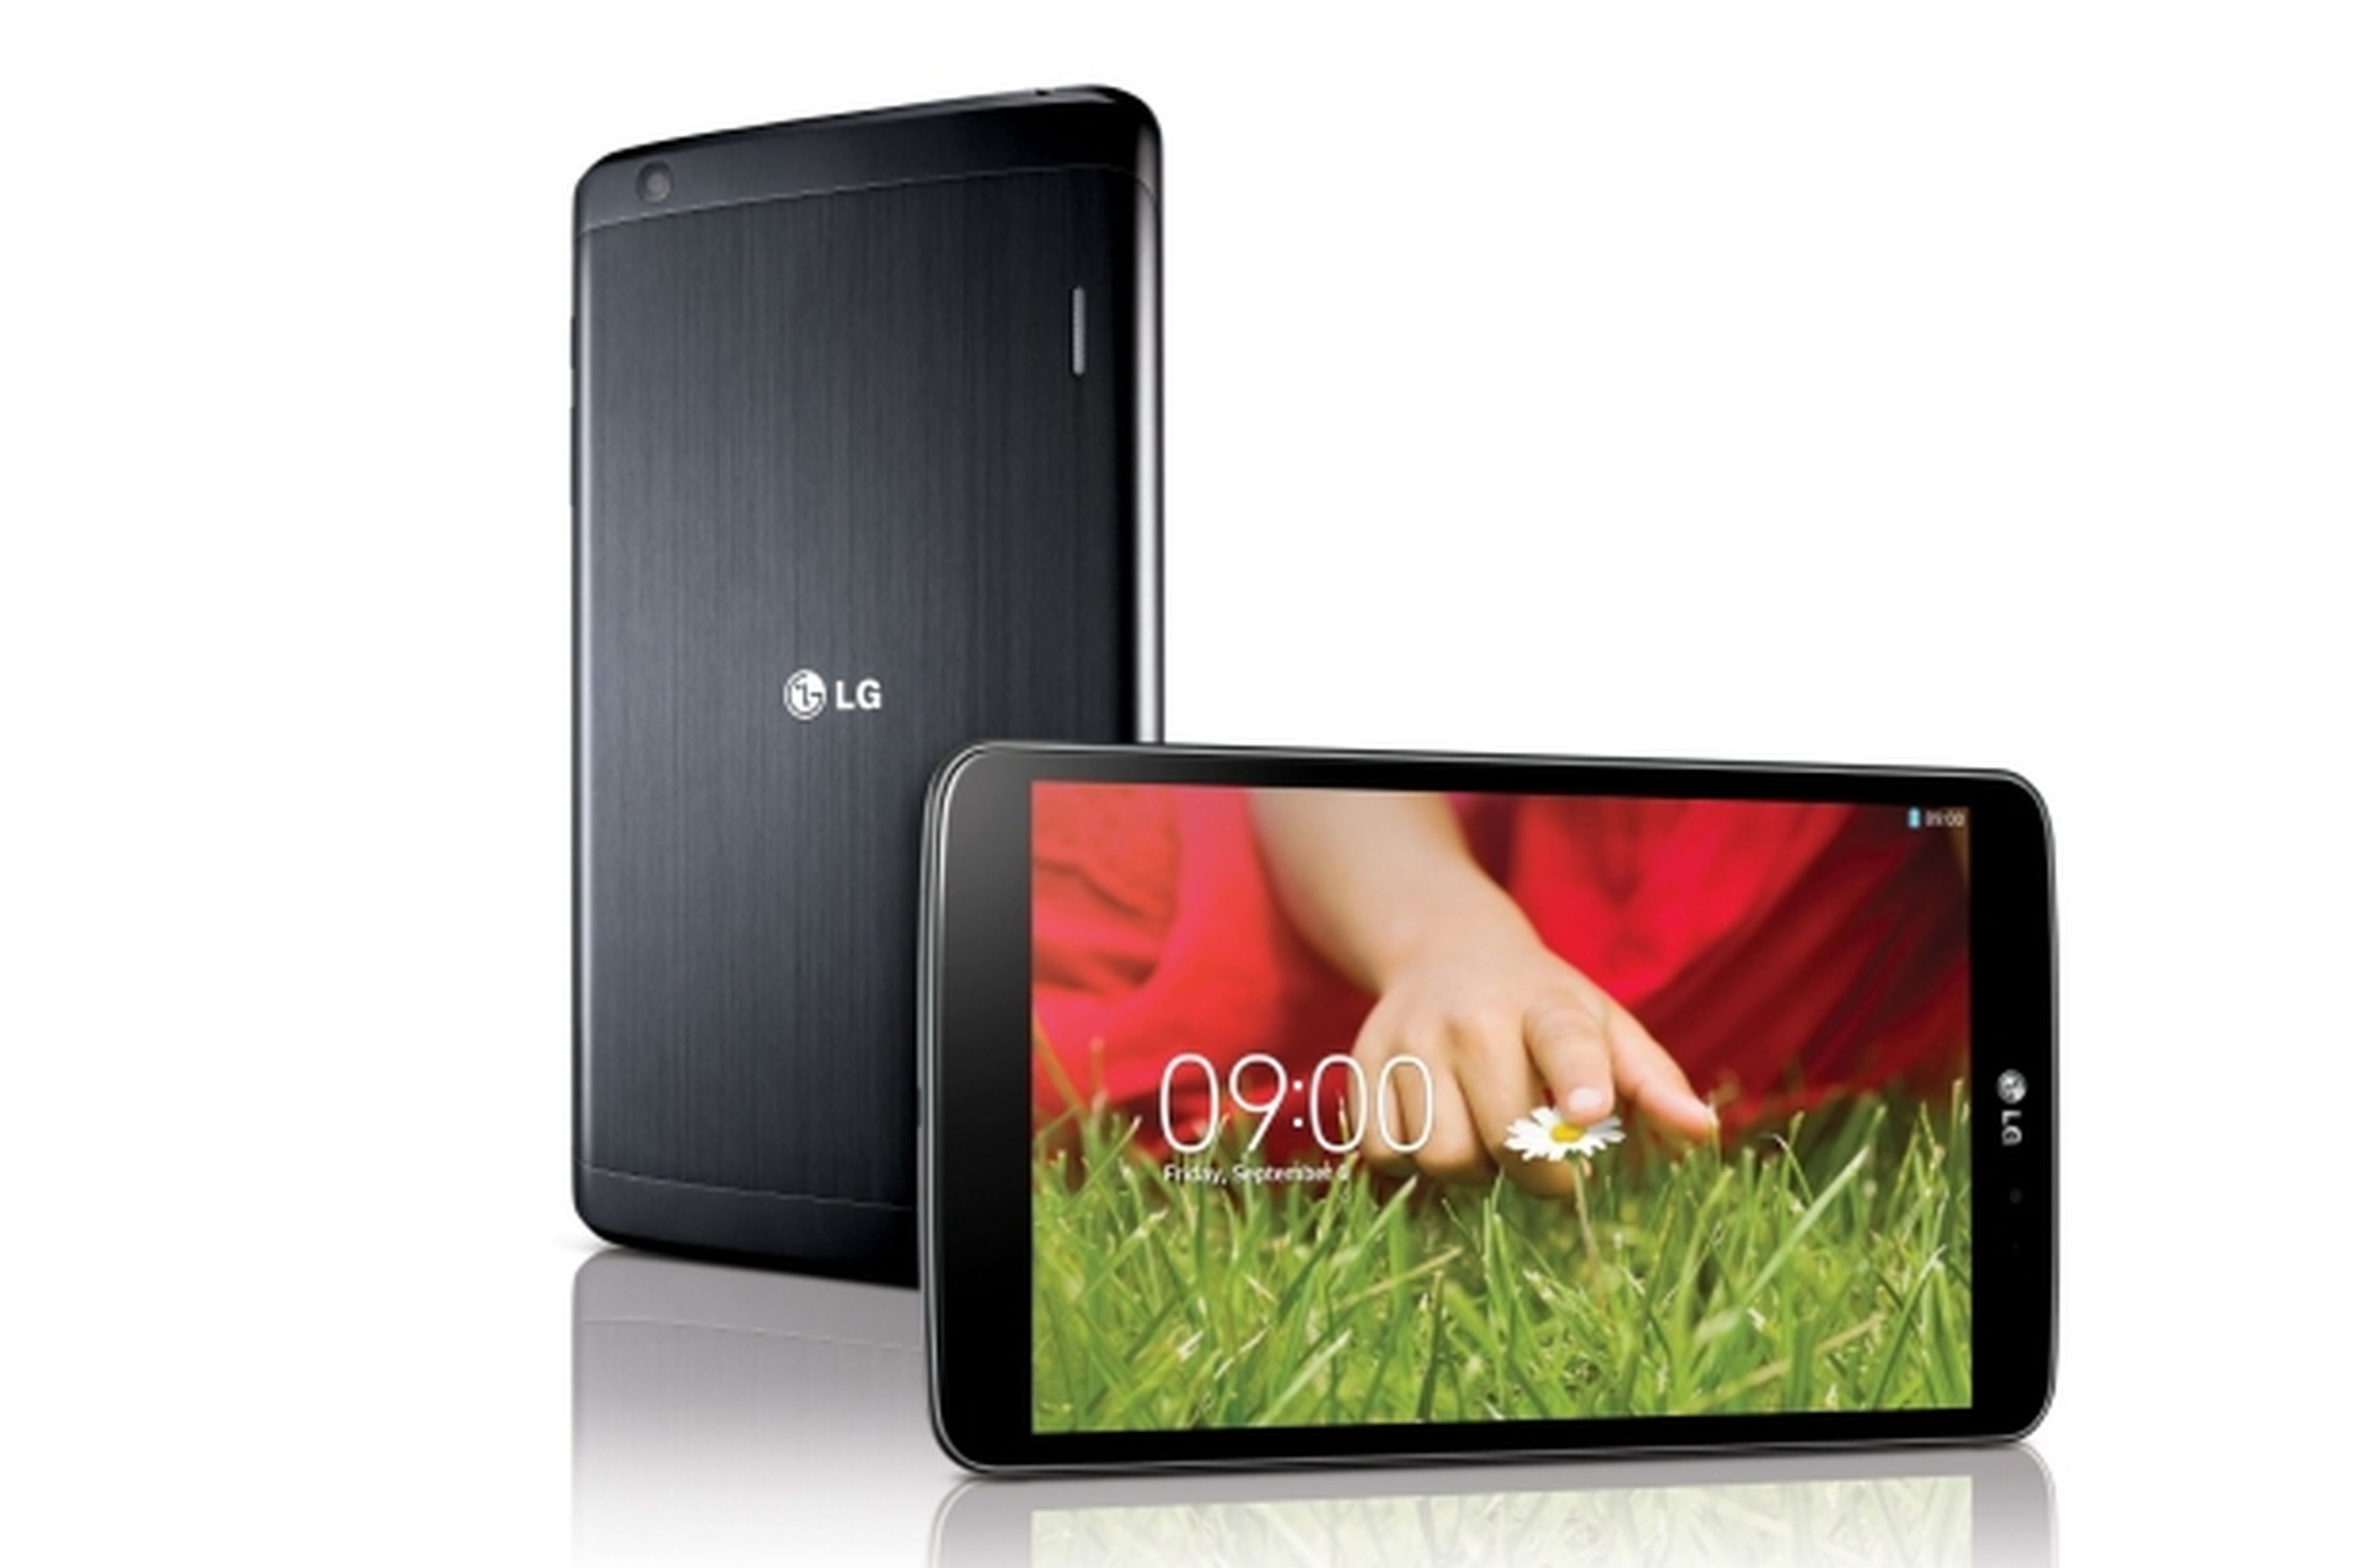 Presentación oficial LG G Pad 8.3, una tablet multitarea